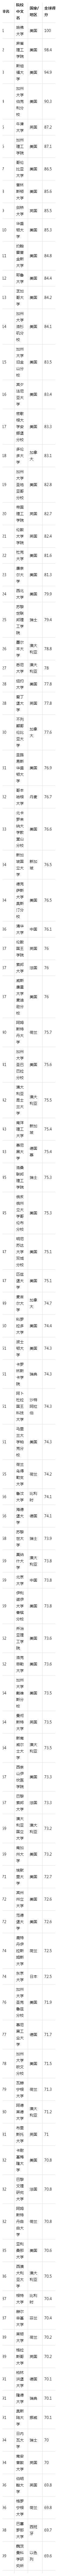 东北大学2020usnews排名_USNews2020中国大学计算机排行榜,浙大第5,这几所大